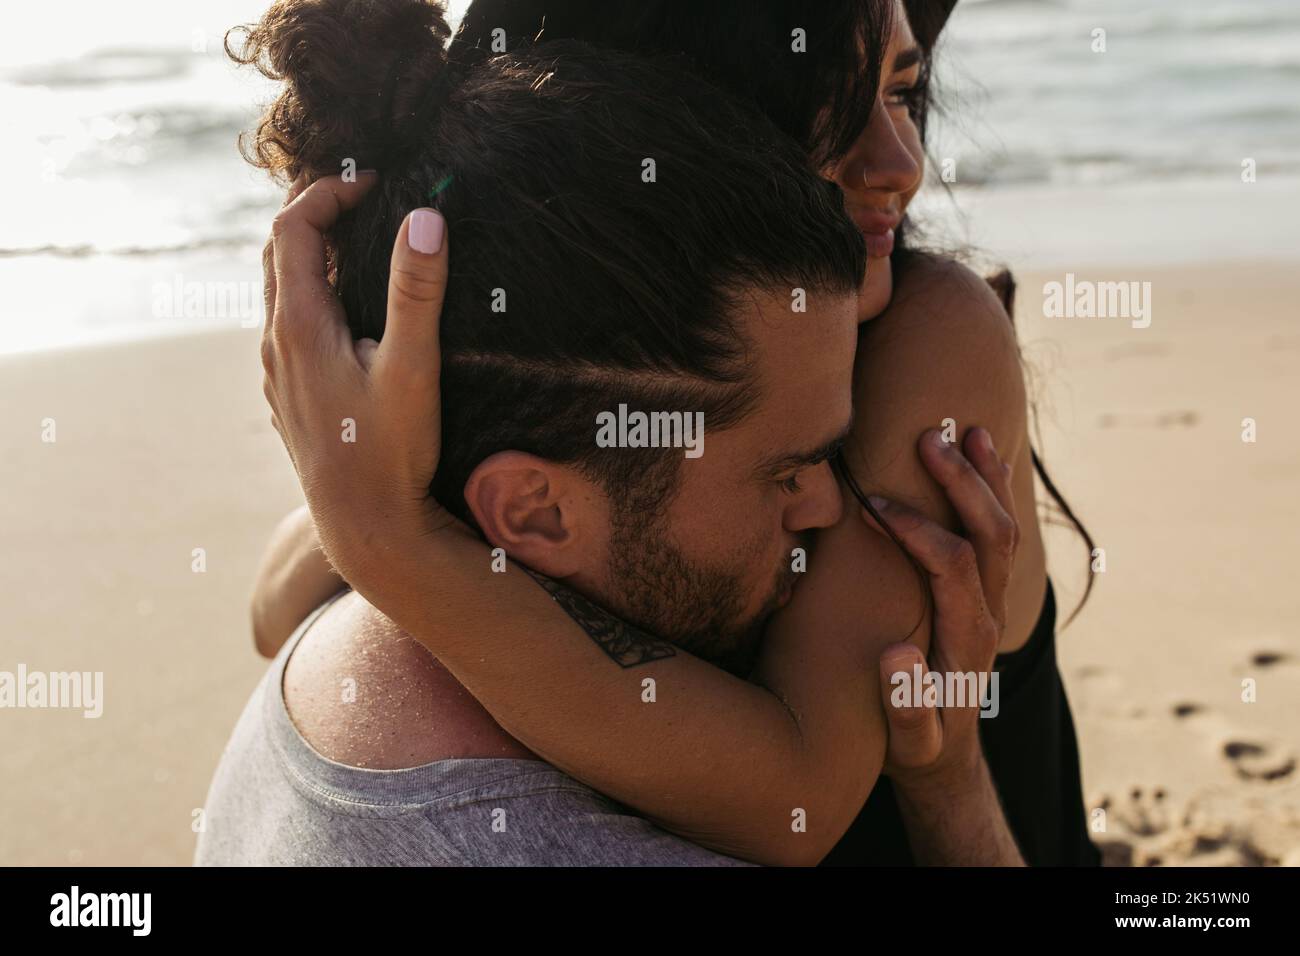 homme barbu embrassant la main sur la femme heureuse avec tatouage sur la plage, image de stock Banque D'Images